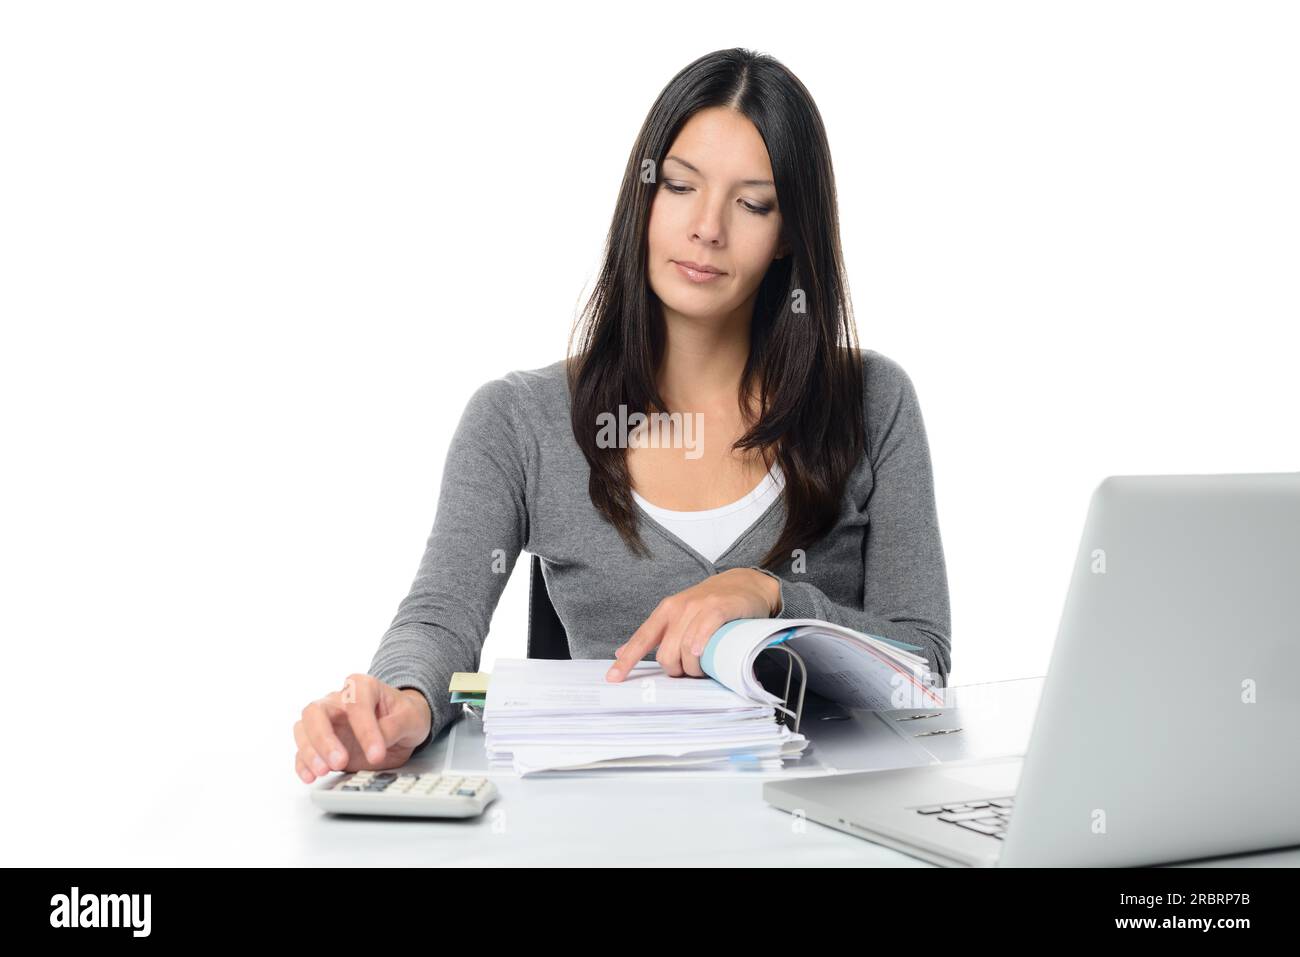 Giovane donna che controlla un rapporto o le fatture in un raccoglitore di grandi dimensioni, che esegue calcoli manuali per verificare le cifre su una calcolatrice da tavolo Foto Stock